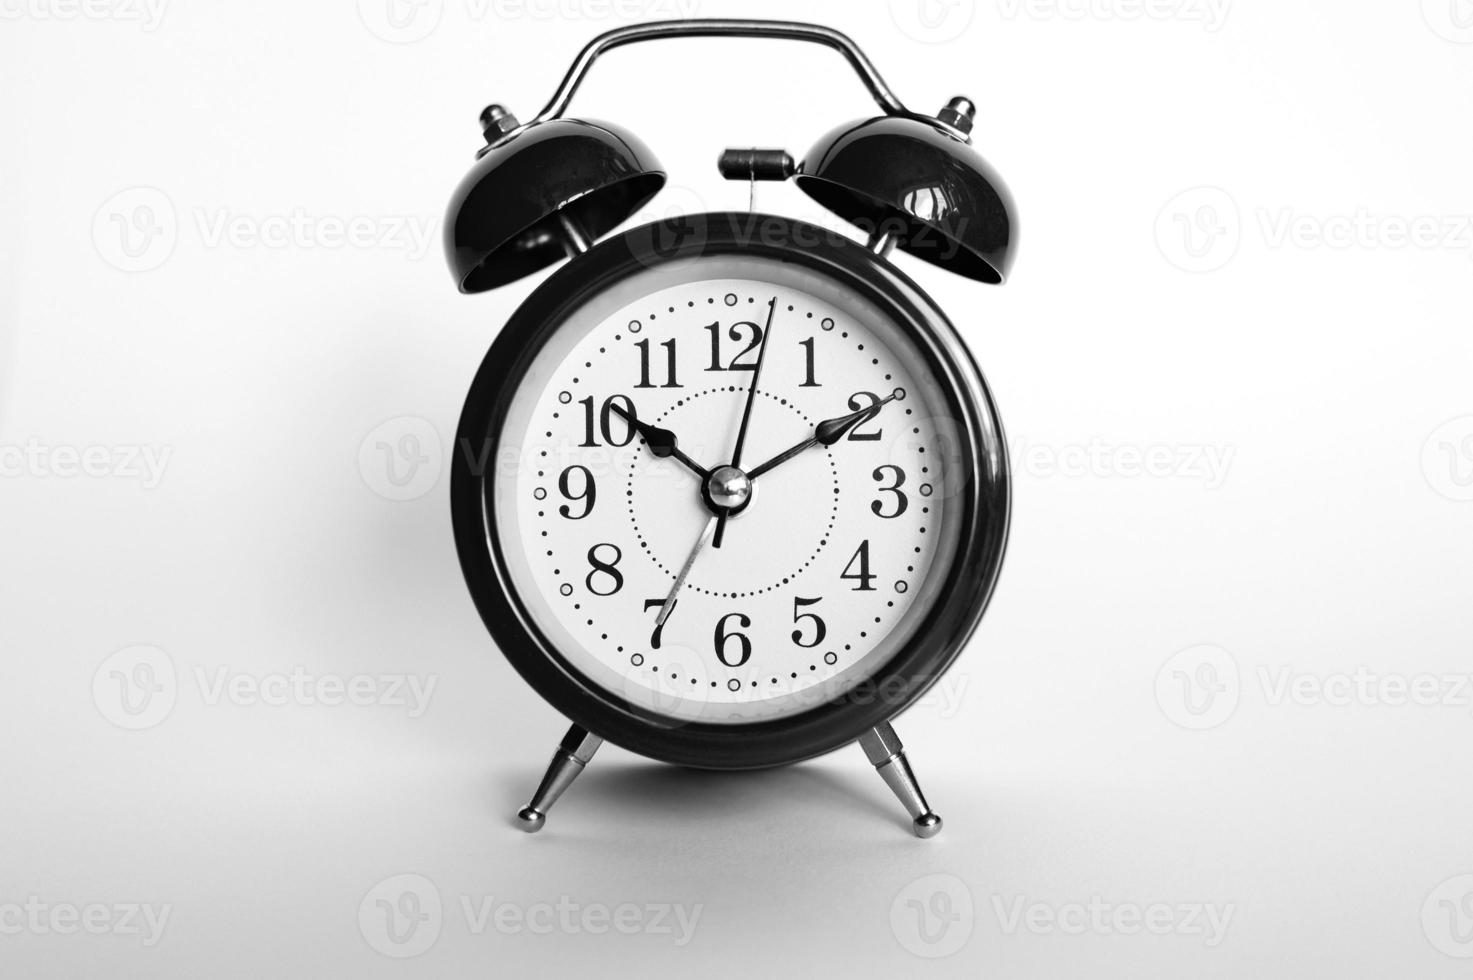 svart rund analog väckarklocka isolerad på vit bakgrund. tid 1010. tonad i svartgrå färg foto